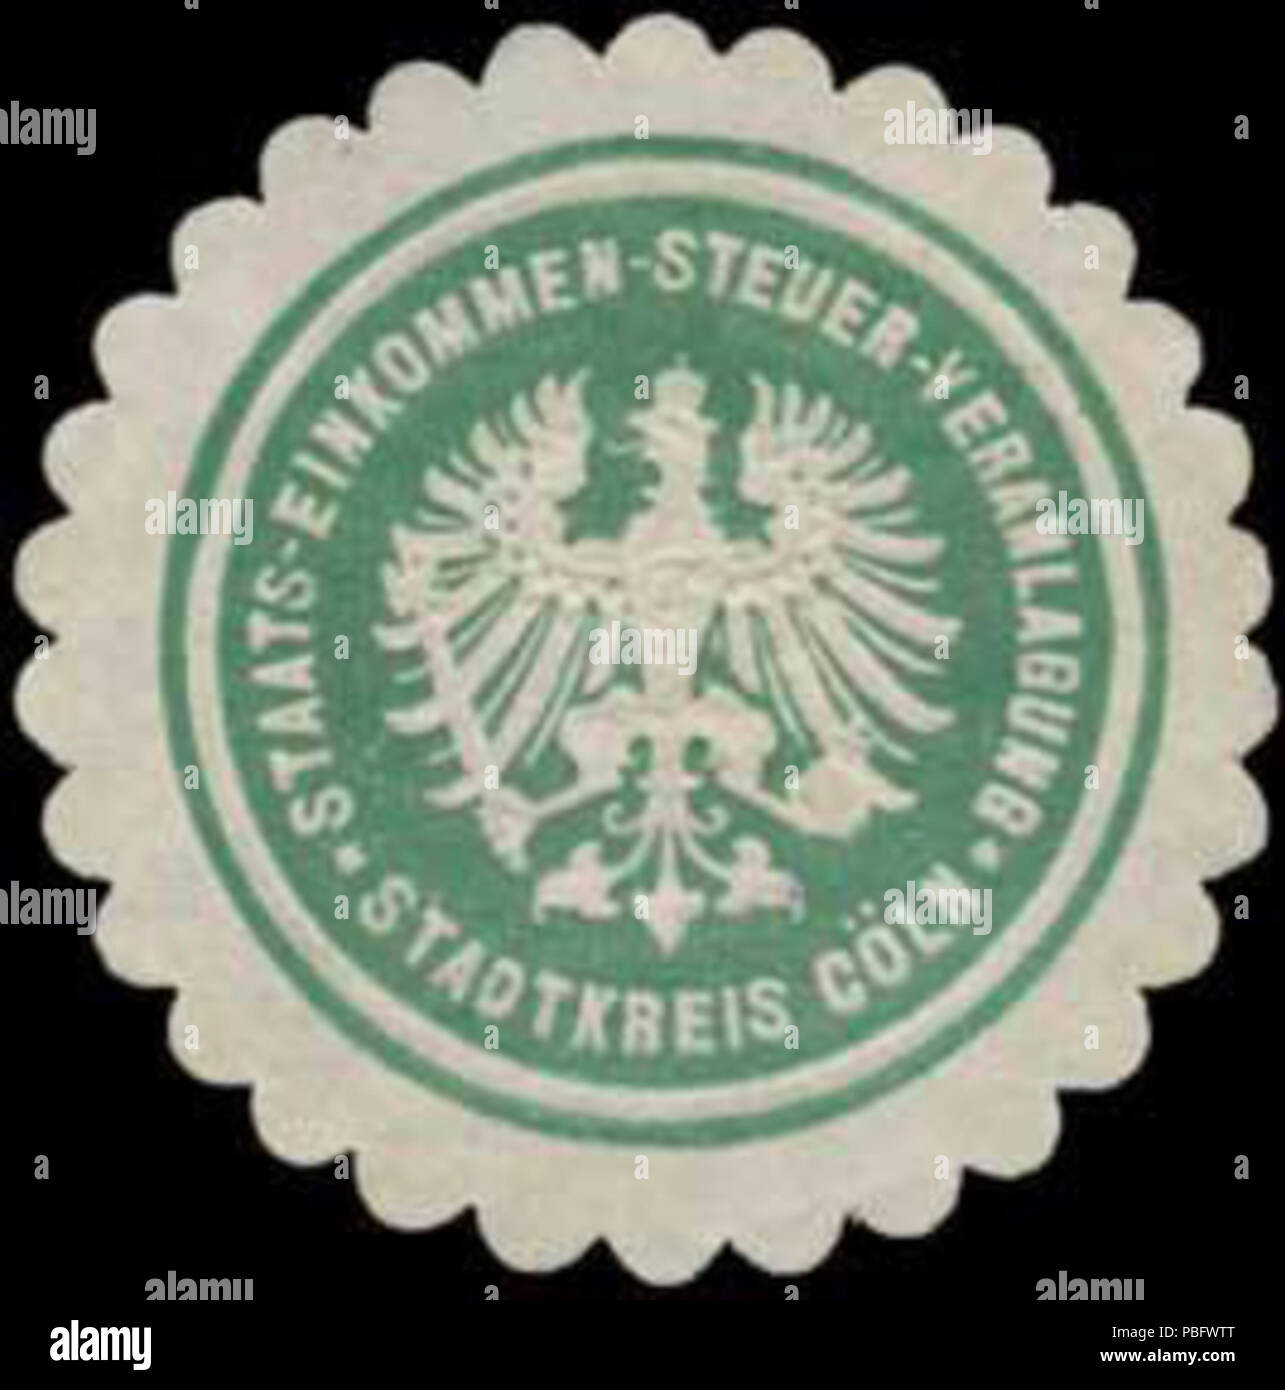 Alte Briefverschlussmarke aus Papier, welche seit ca. 1850 von Behoerden, Anwaelten, Notaren und Firmen zum verschliessen der Post verwendet wurde. 1513 Siegelmarke Staats-Einkommen-Steuer-Veranlagungs Stadtkreis Köln W0383952 Foto Stock